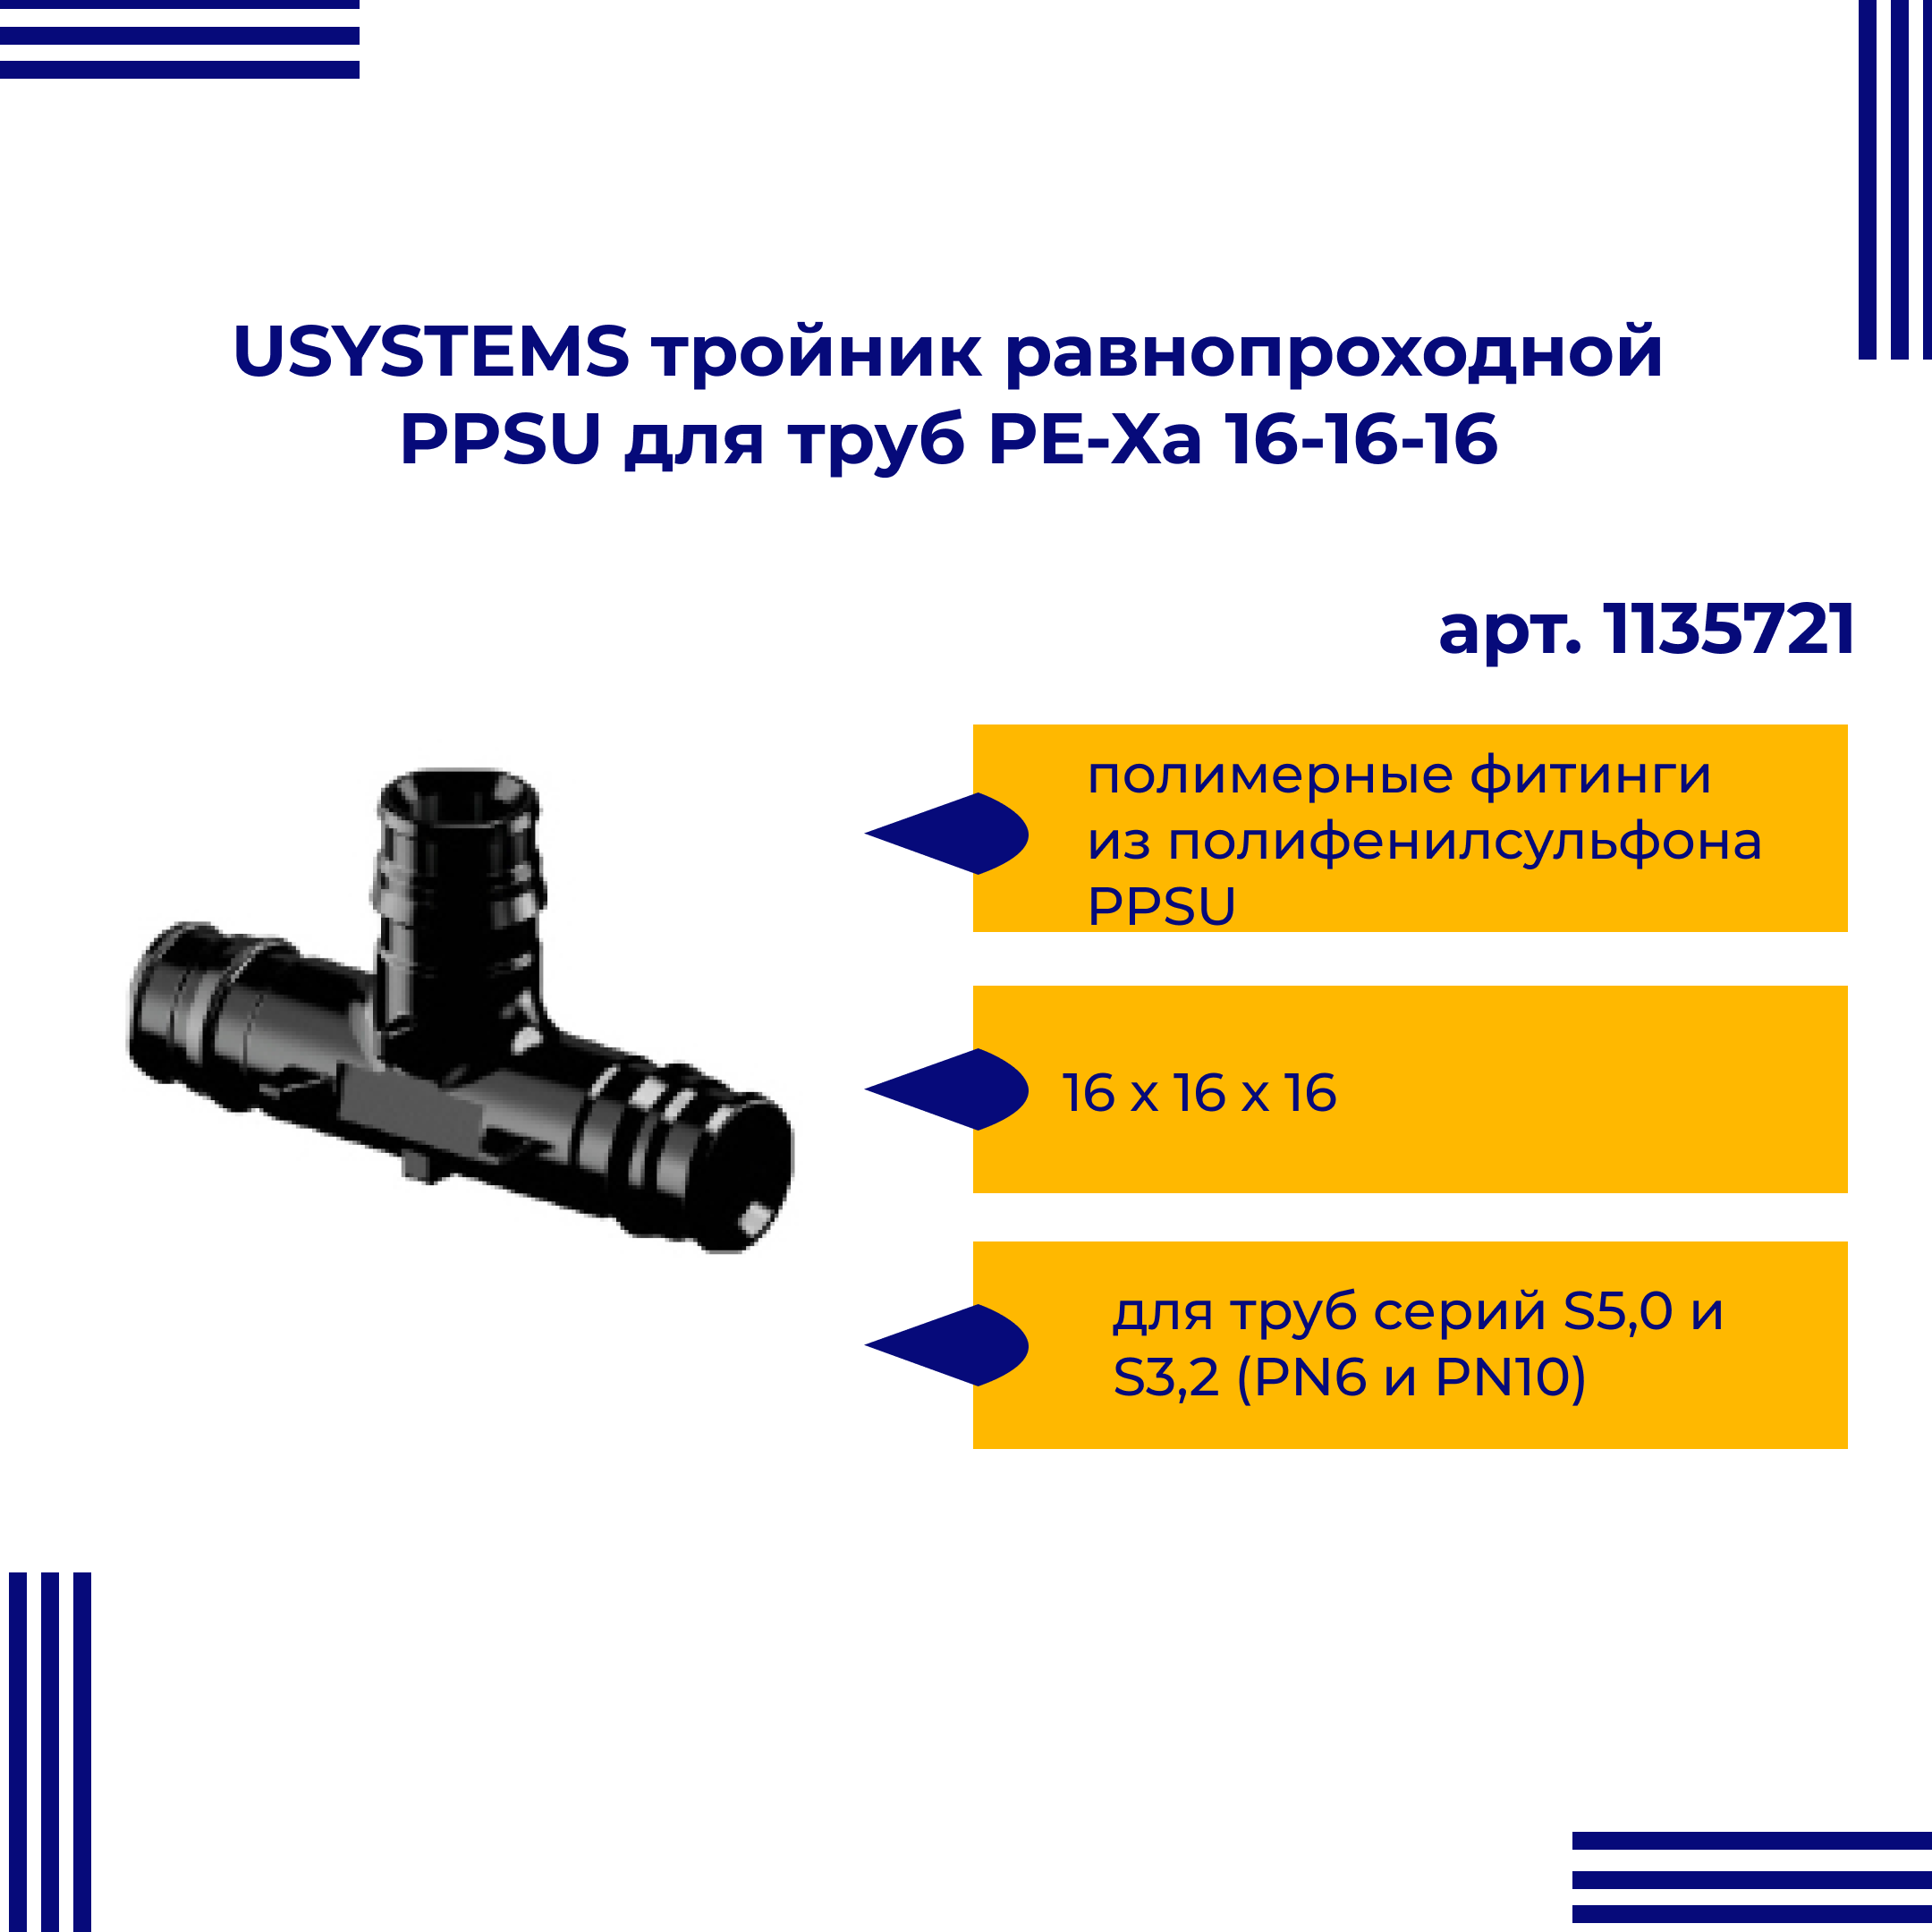 Тройник PPSU USYSTEMS равнопроходной для труб PE-Xa 16-16-16 1135721 равнопроходной тройник viega